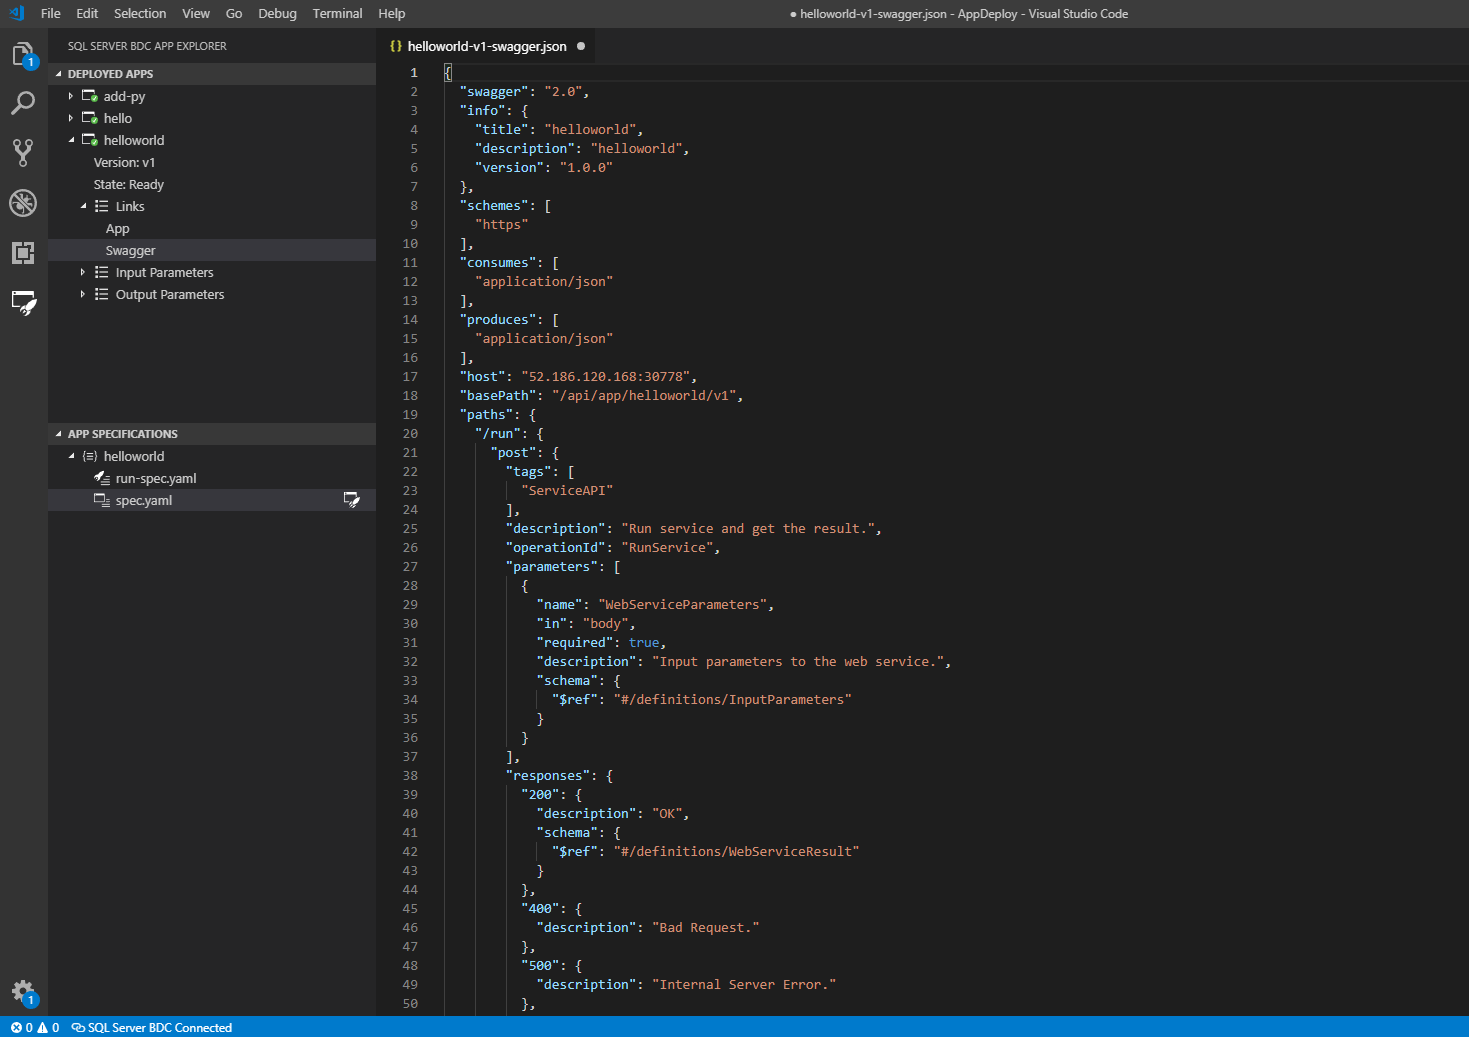 Снимок экрана, на котором показан пользовательский интерфейс Visual Studio Code с файлом swagger.json.